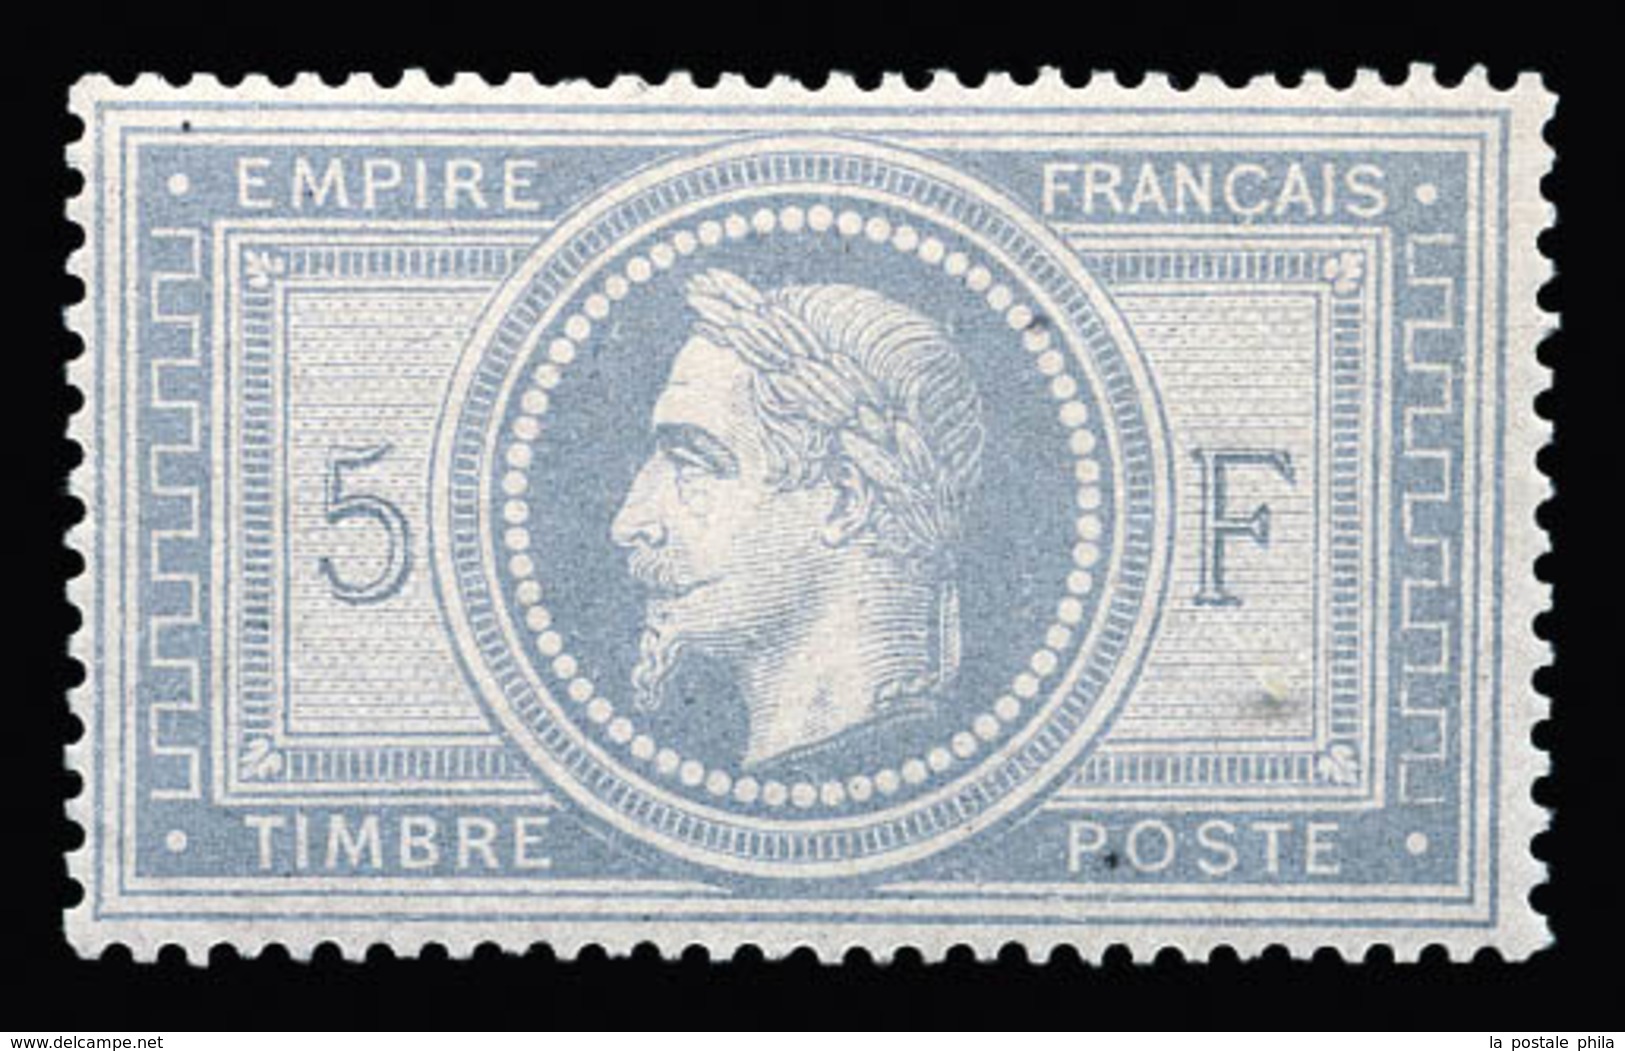 * N°33a, Empire, 5F Gris-bleu, Quasi **, Fraîcheur Postale. SUP (signé/certificats)  Qualité: *  Cote: 10000 Euros - 1863-1870 Napoléon III. Laure